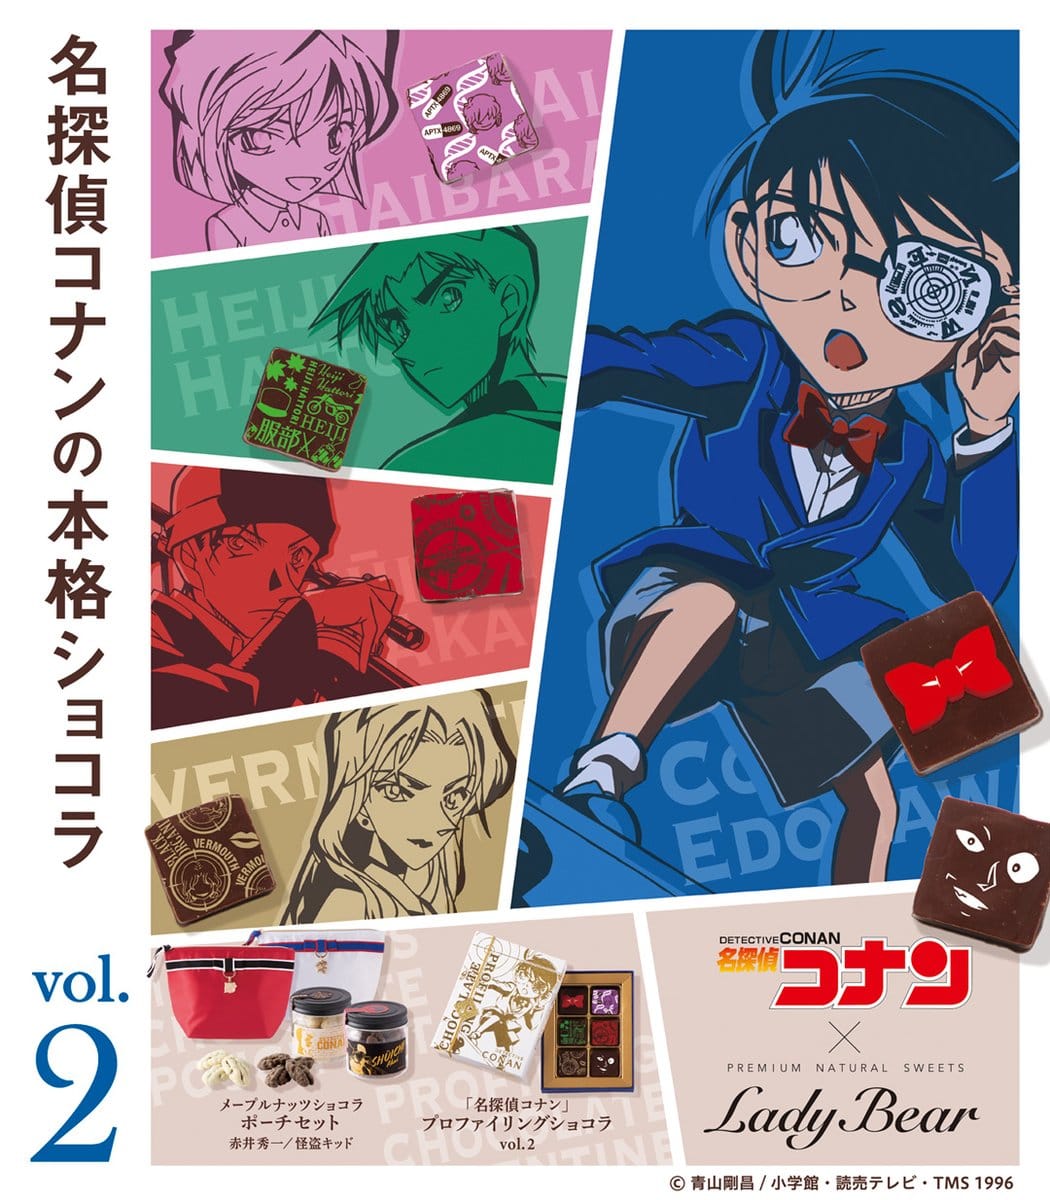 名探偵コナン × Lady Bear ショコラ第2弾 2.15より購入整理券をWeb配布!